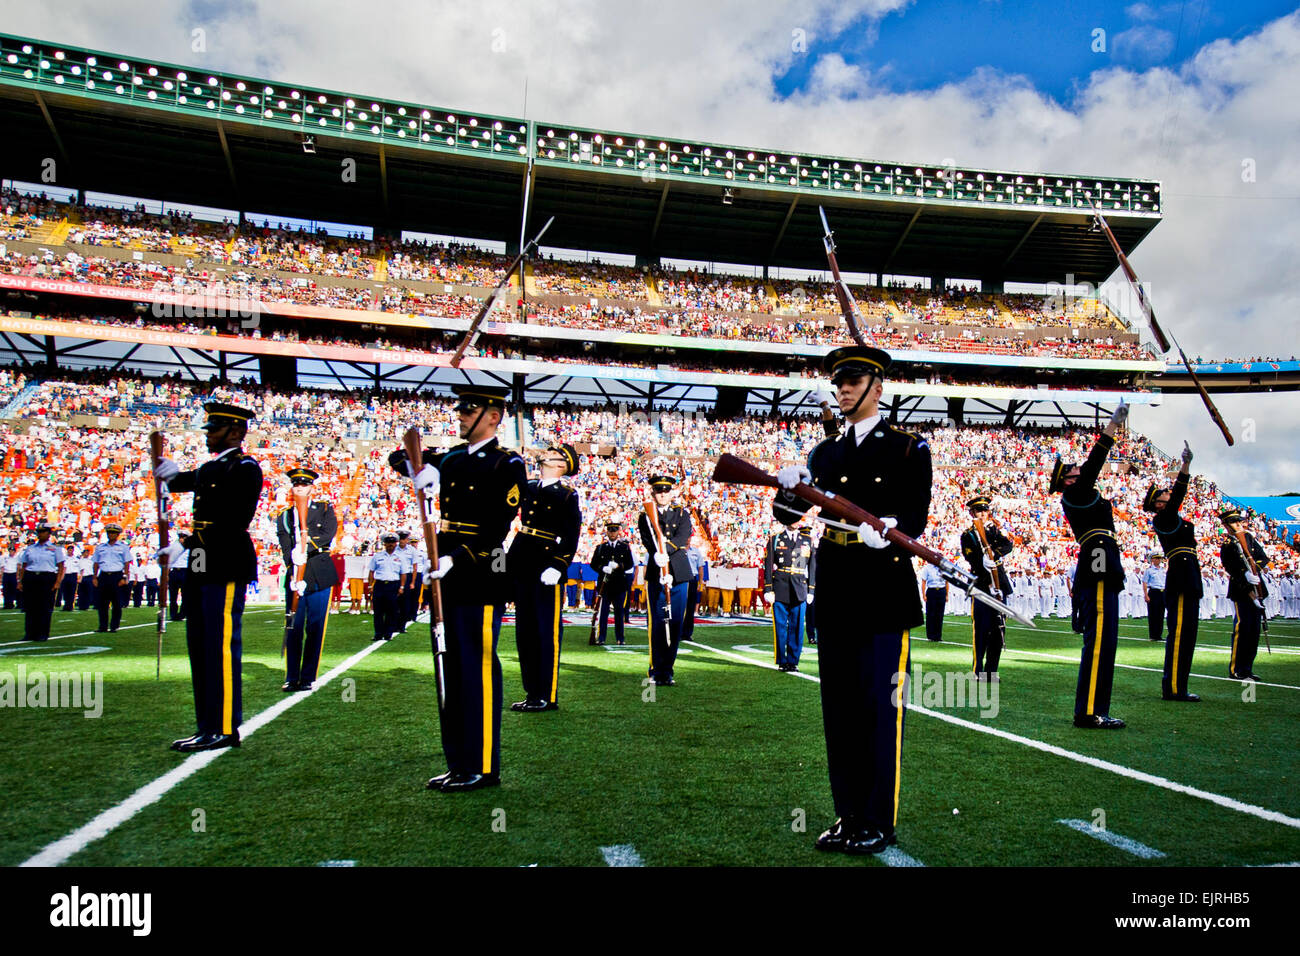 Soldaten der US Army Drill Team zugewiesen führen im Aloha Stadium während der 2012 National Football League Pro Bowl Halbzeit-Show in Honolulu, Hawaii, Jan. 29. Mehrere hundert Soldat innen, Basen in Hawaii zugewiesen wurden während der 2012 Pro Bowl Halbzeit-Show geehrt. Stockfoto